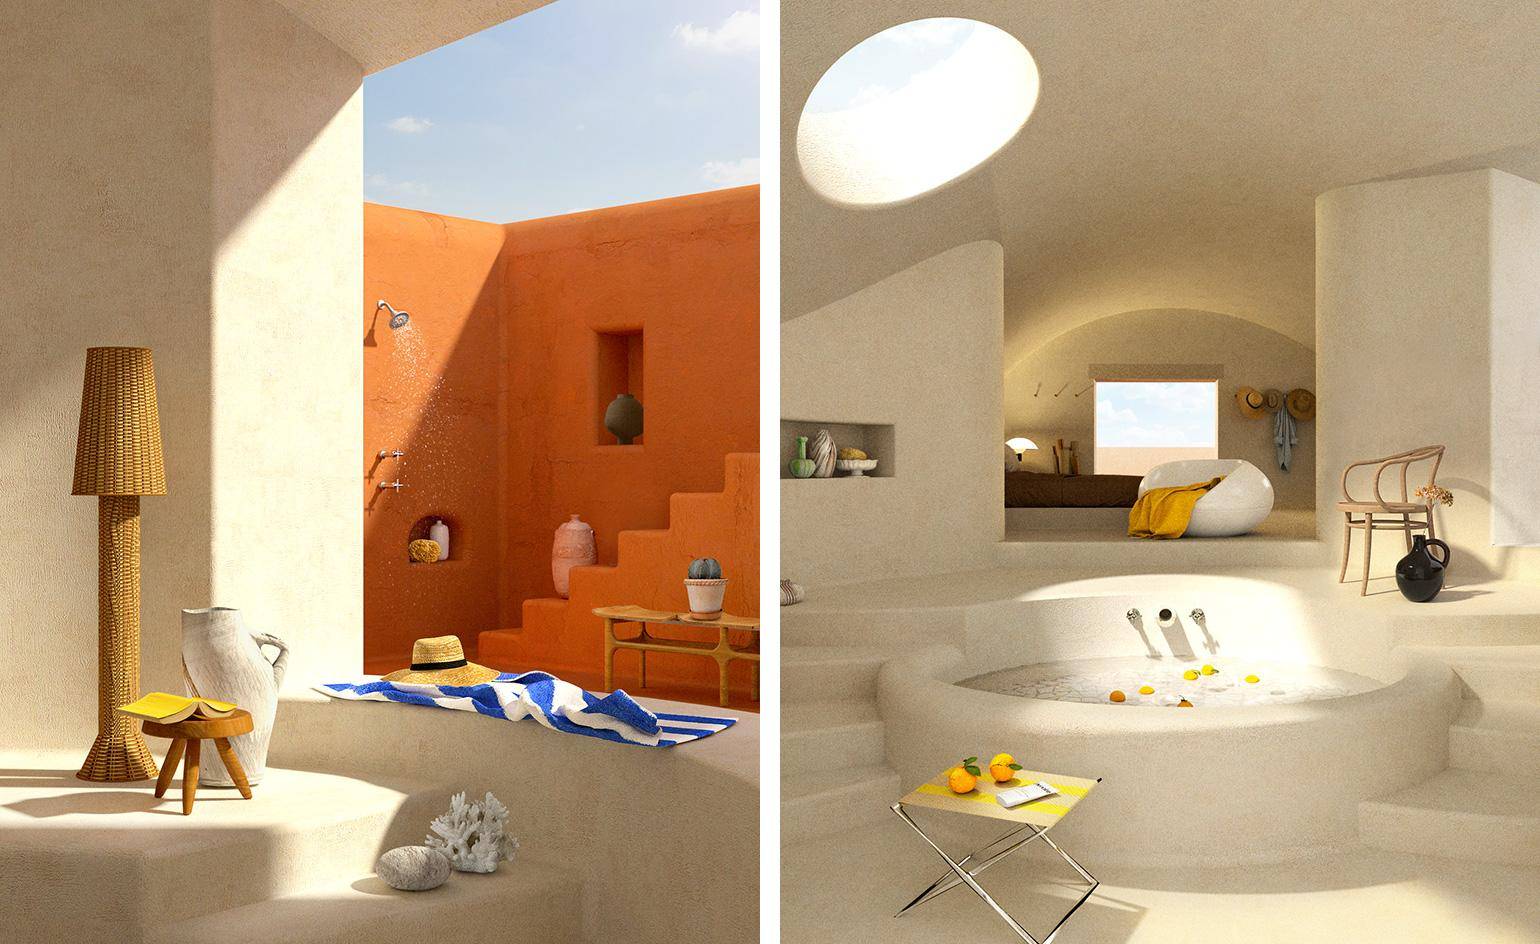 室内设计虚拟空间图片 超现实派室内设计图片 结构空间图片室内设计